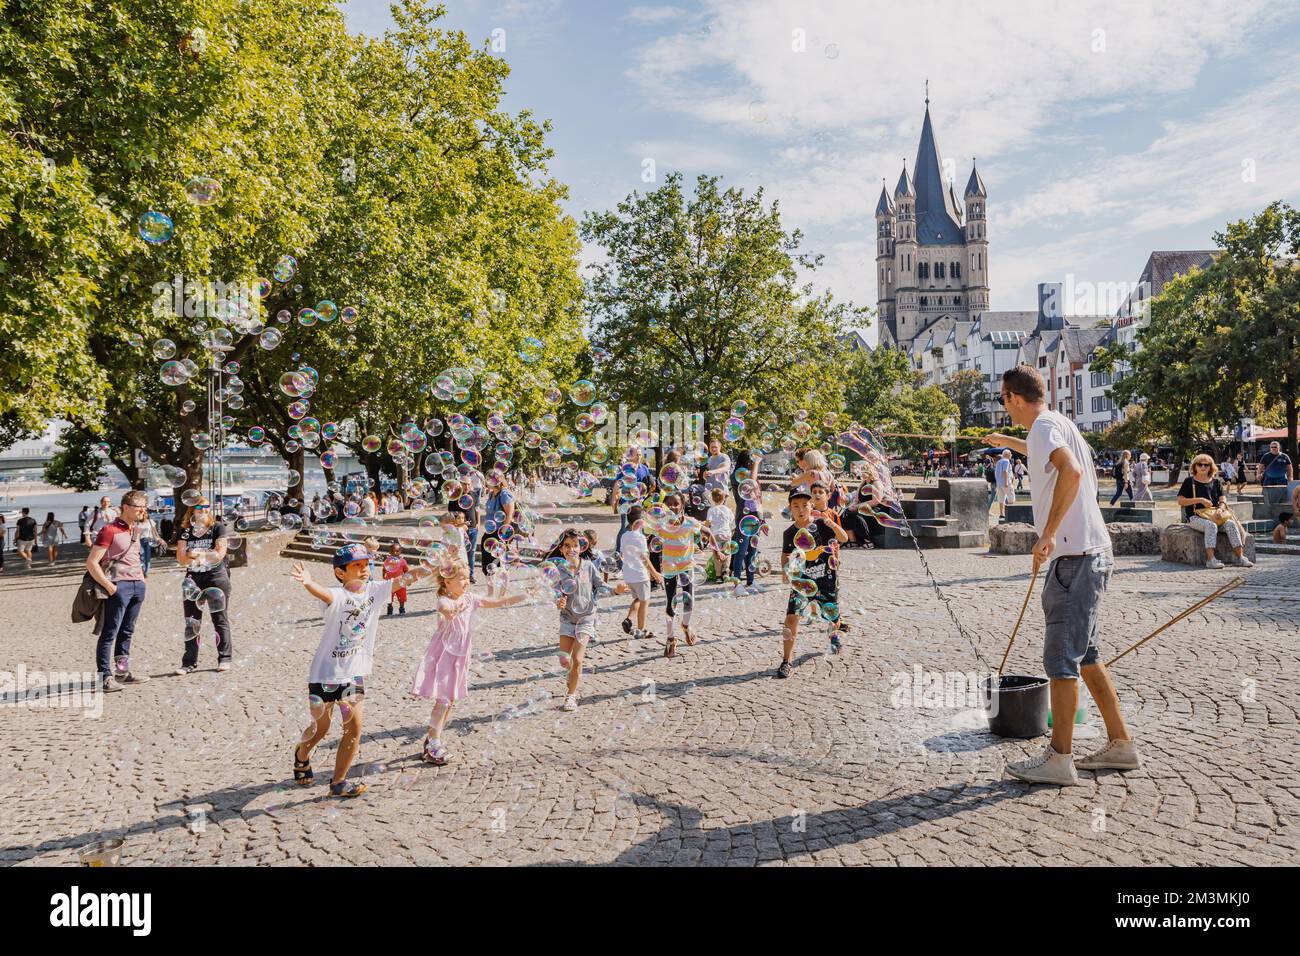 29 juillet 2022, Cologne, Allemagne: Un artiste de rue faisant un spectacle et un spectacle de bulles de savon pour les enfants qui s'amusent Banque D'Images